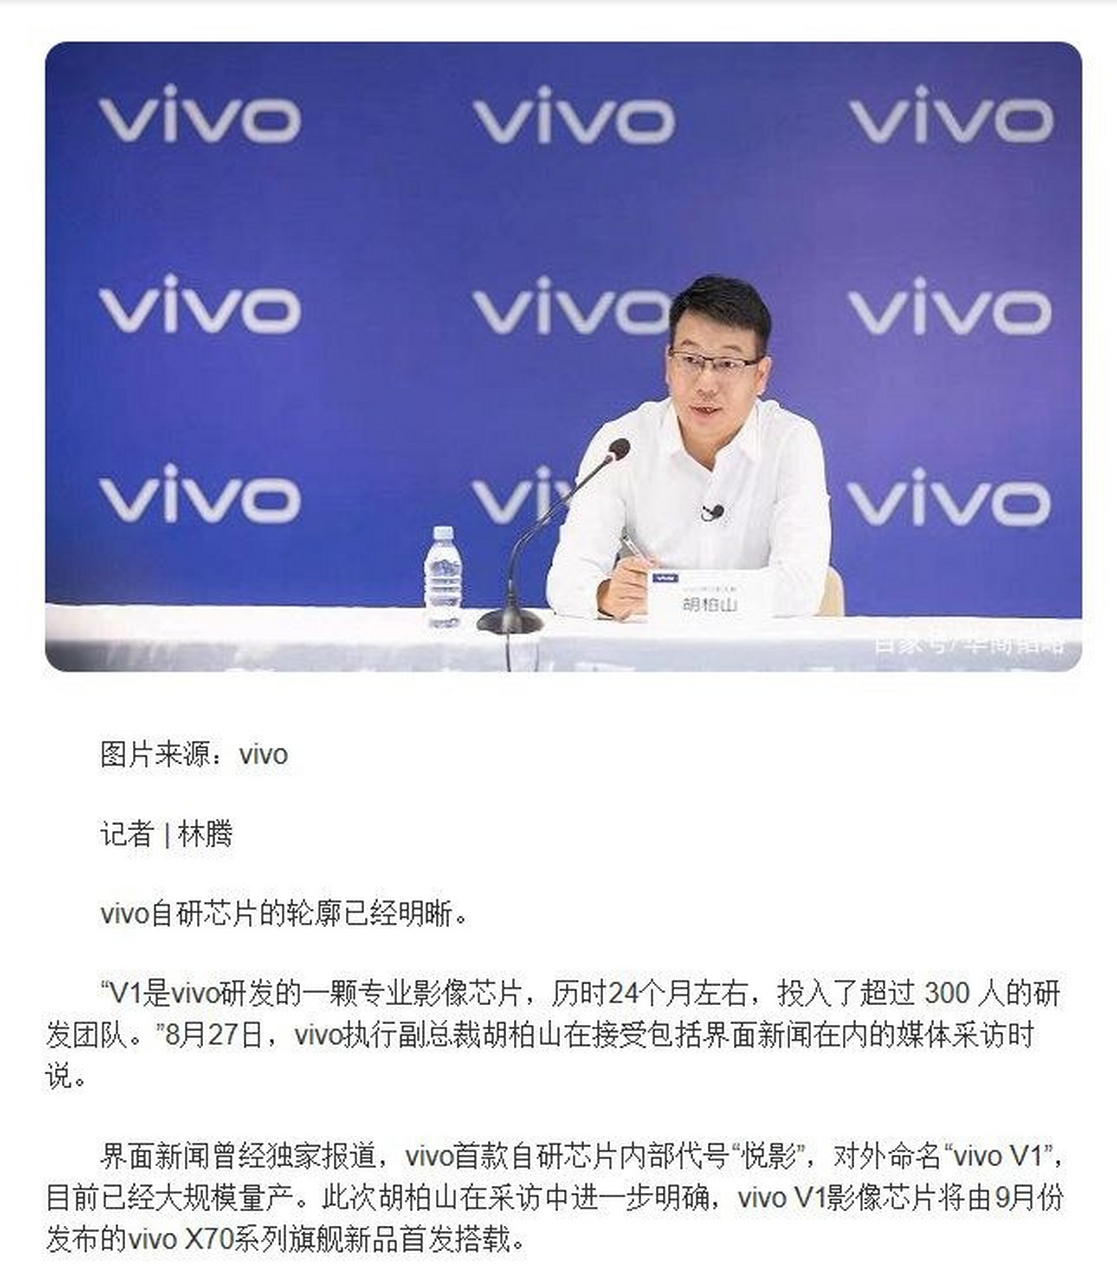 近日,vivo执行副总裁胡柏山在接受媒体采访时确认了vivo x70系列将于9